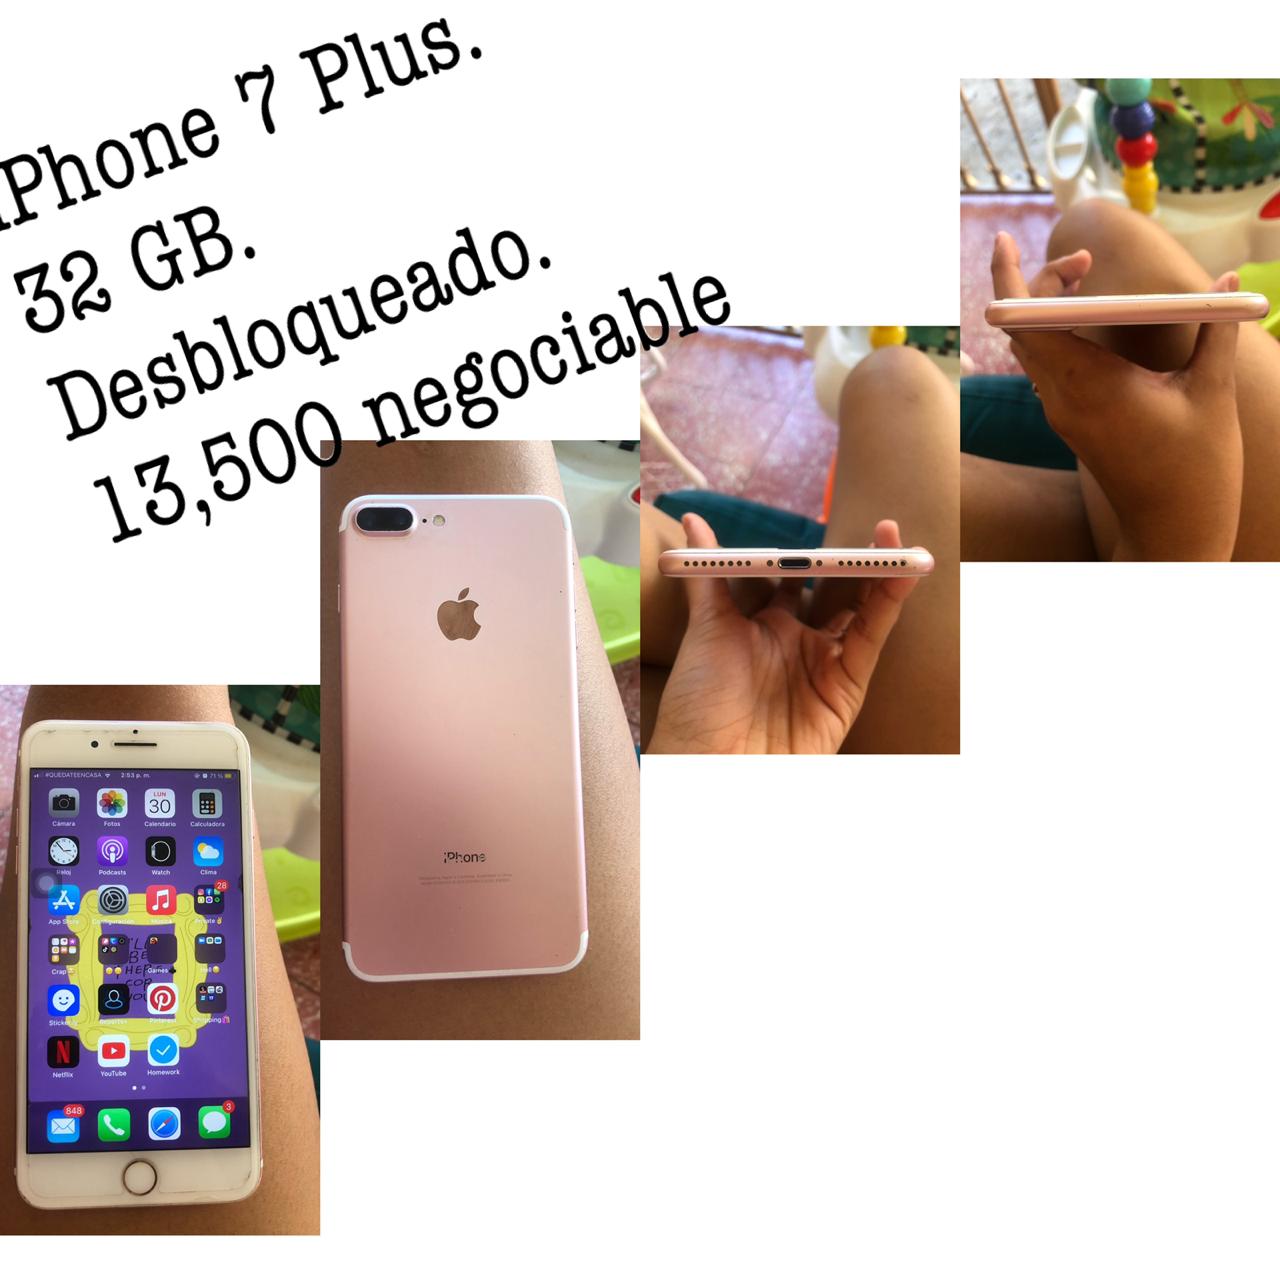 celulares y tabletas - Iphone 7 plus 
Desbloqueado 
32 GB

 